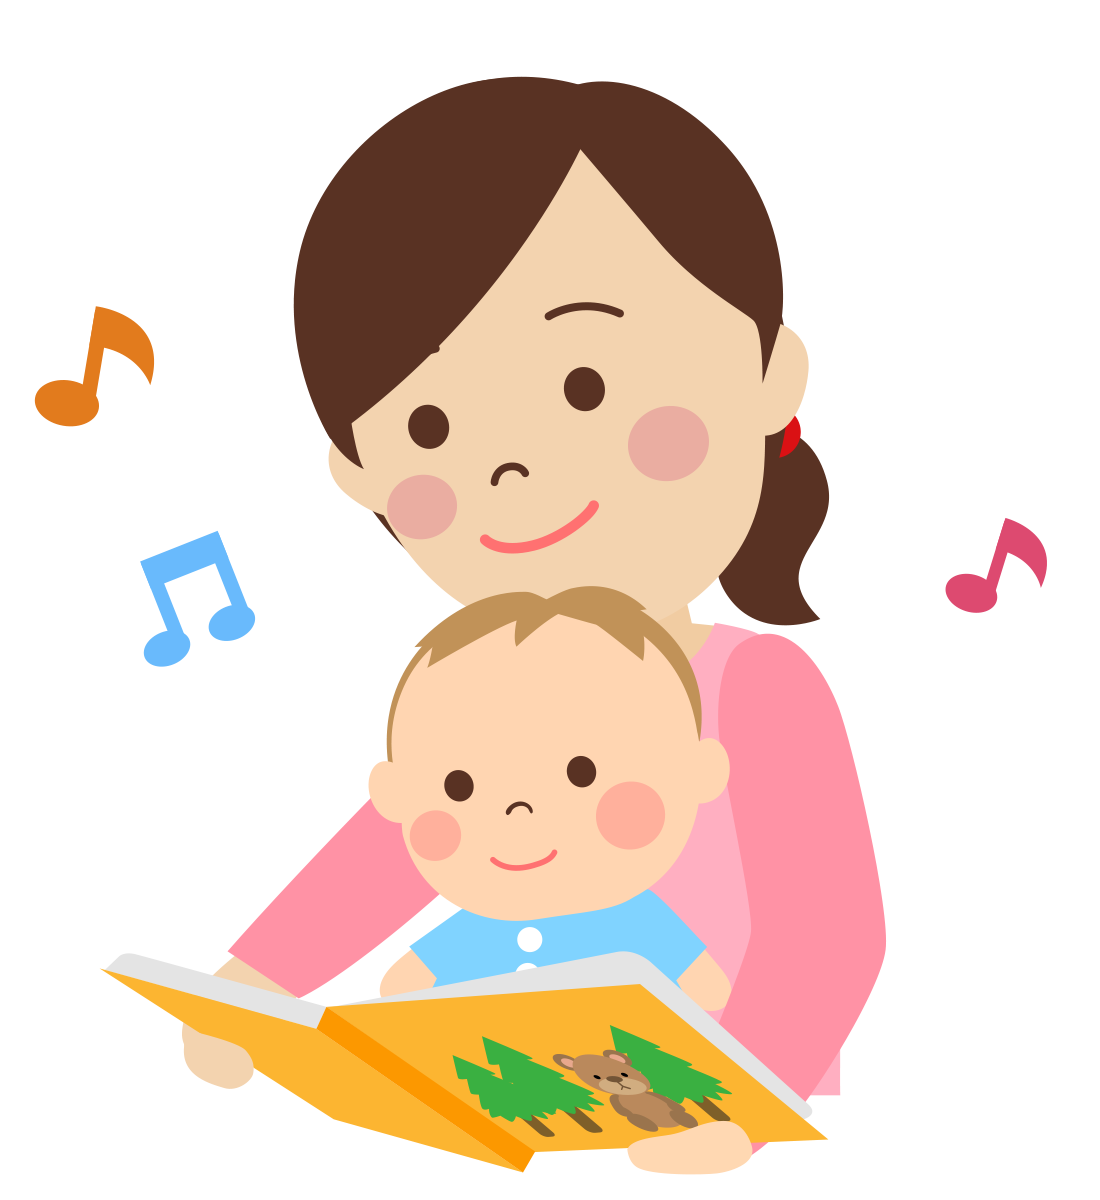 その愛情はちゃんと伝わっています 赤ちゃんへの絵本の読み聞かせ効果は無限大 絵本が読み放題 読み聞かせアプリ 森のえほん館